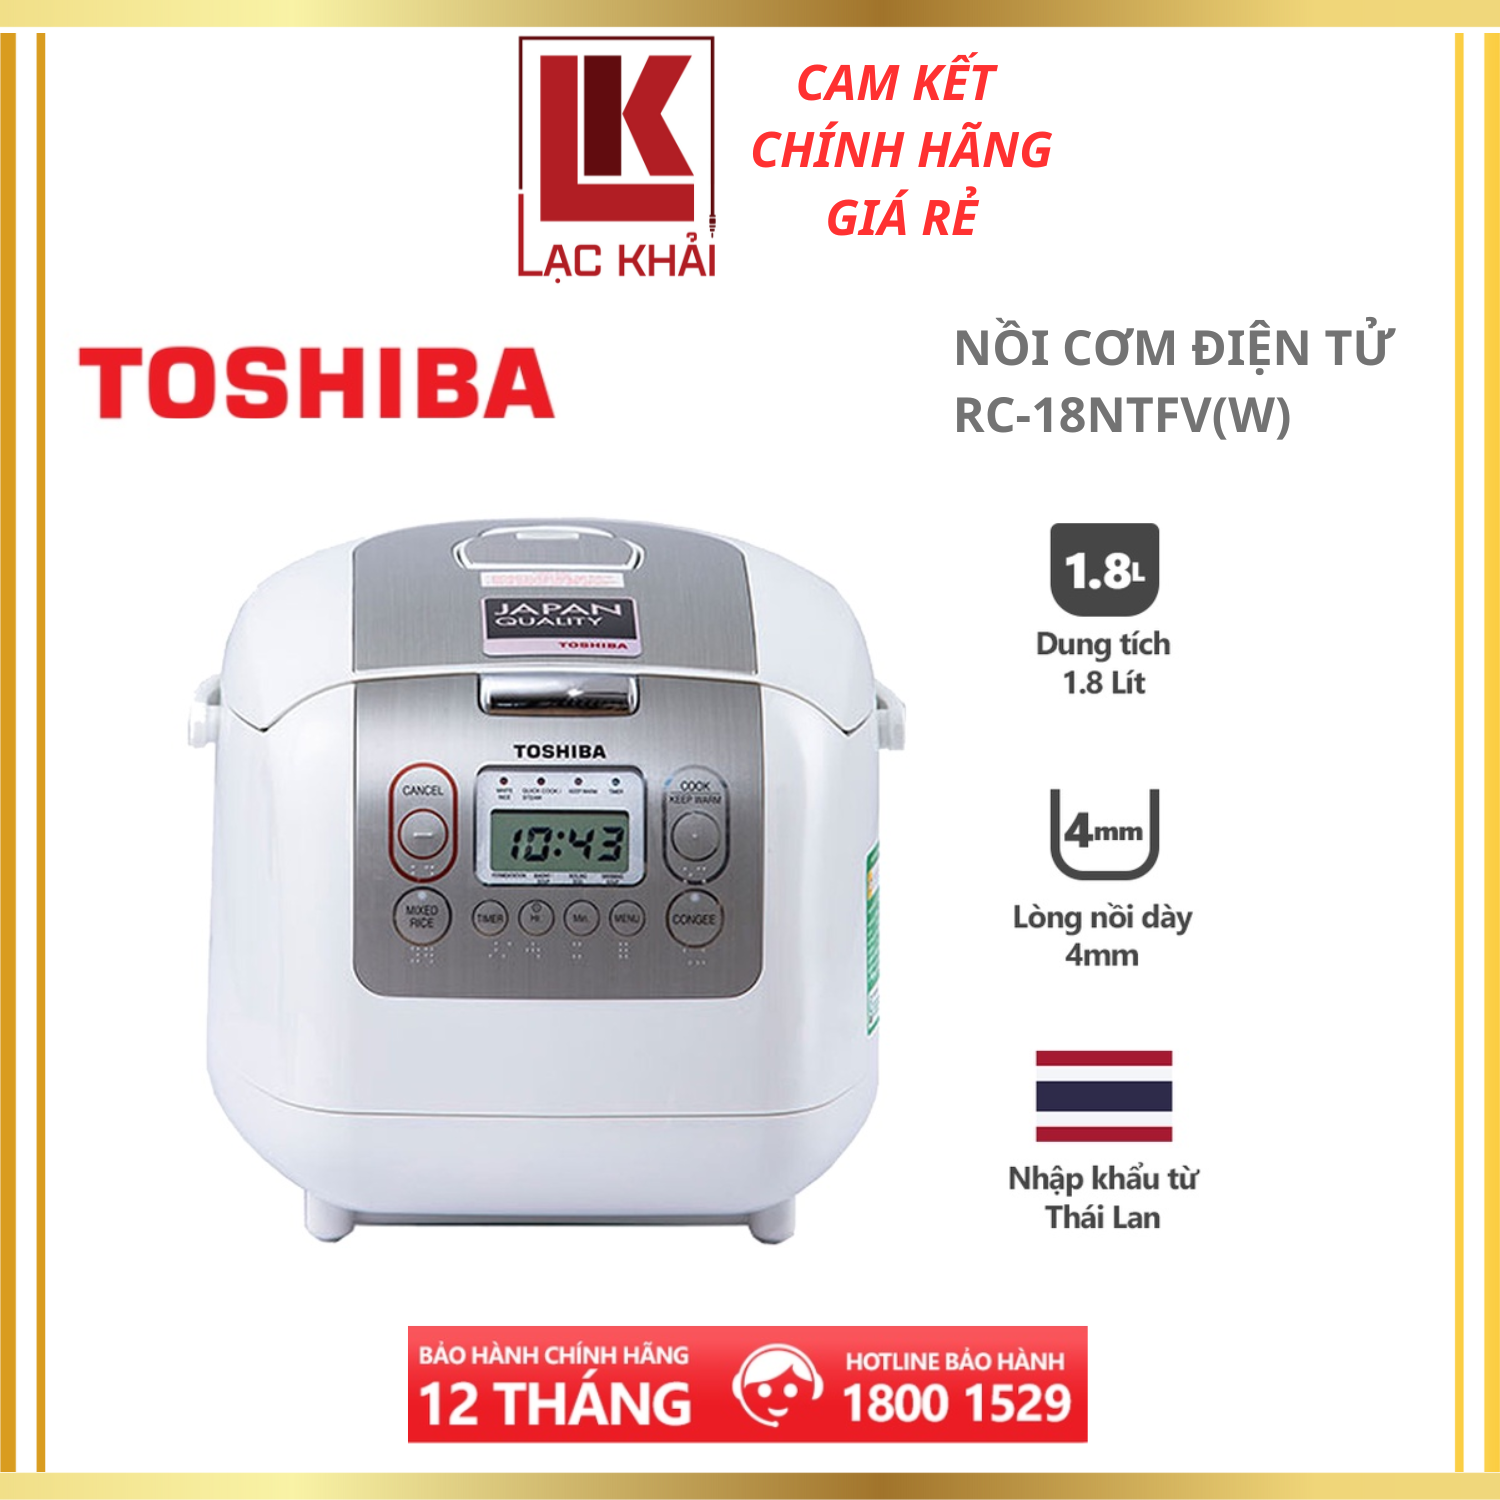 Nồi cơm điện tử Toshiba 1.8L RC-18NTFV(W) - Xuất xứ Thái lan - Lòng nồi hợp kim dày 4mm - Phù hợp cho gia đình 4-6 người - Hàng chính hãng - Bảo hành 12 tháng, chất lượng Nhật Bản